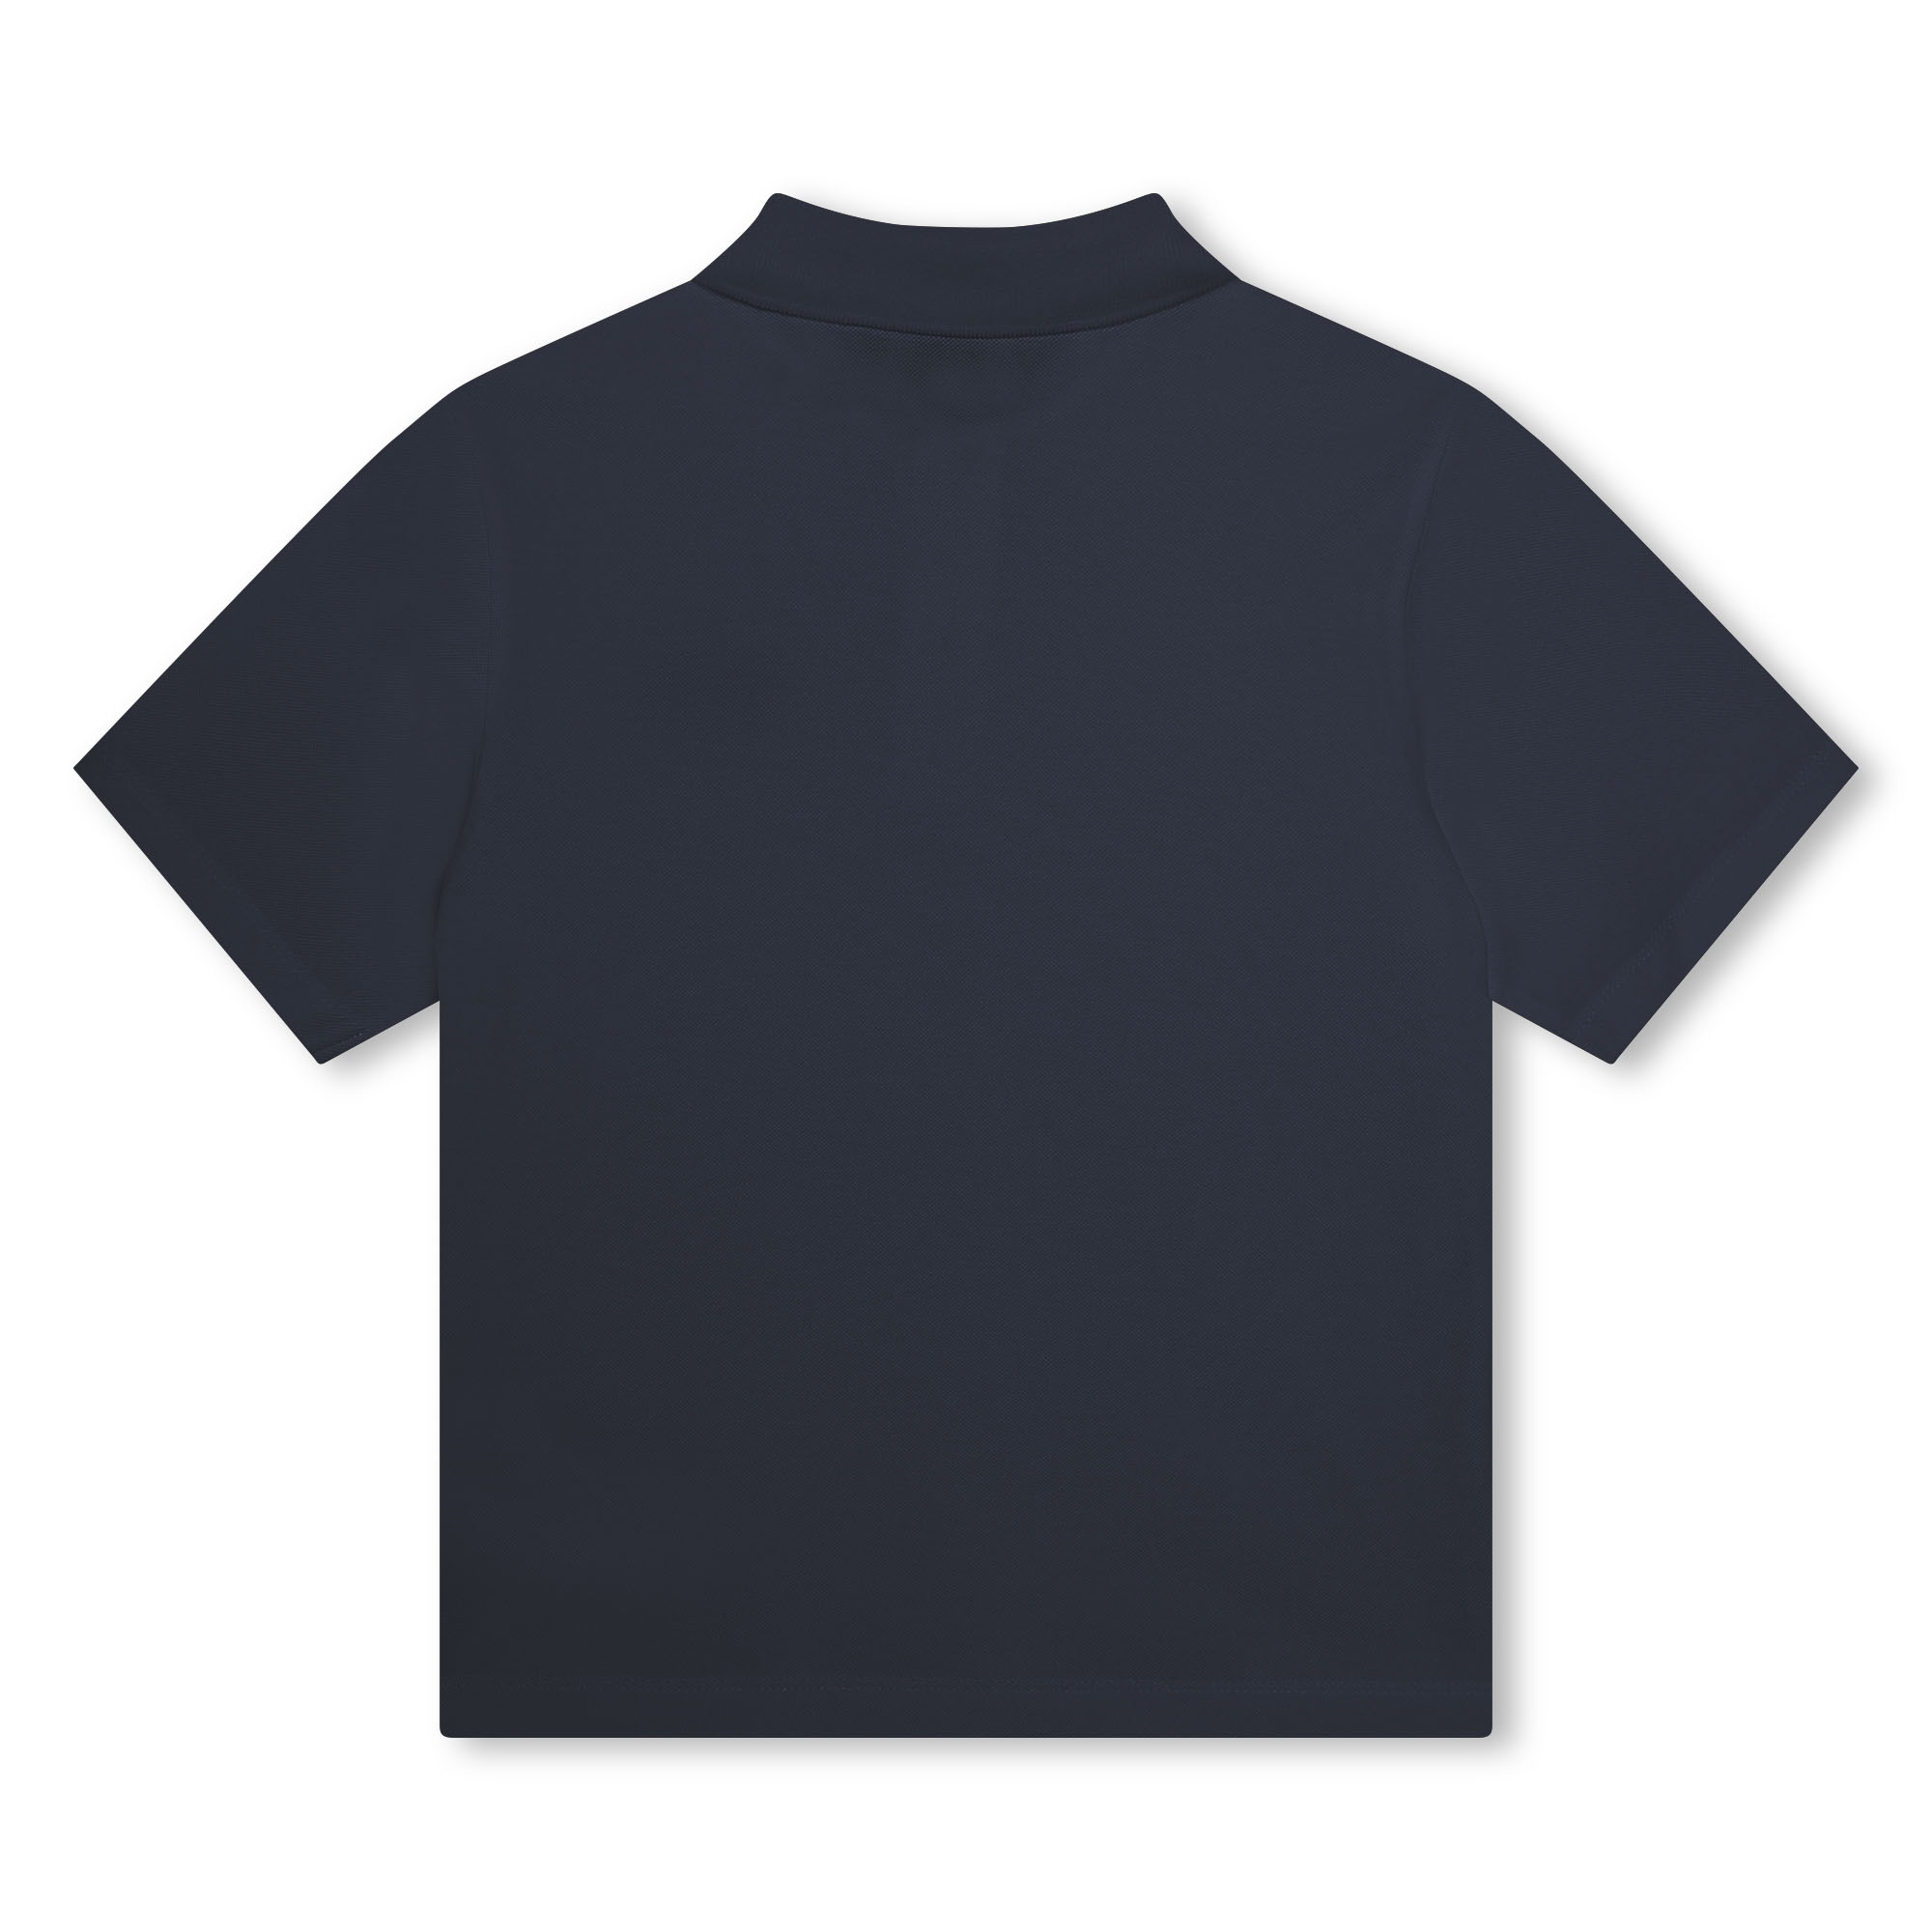 Kurzarm-Poloshirt mit Logo KENZO KIDS Für JUNGE